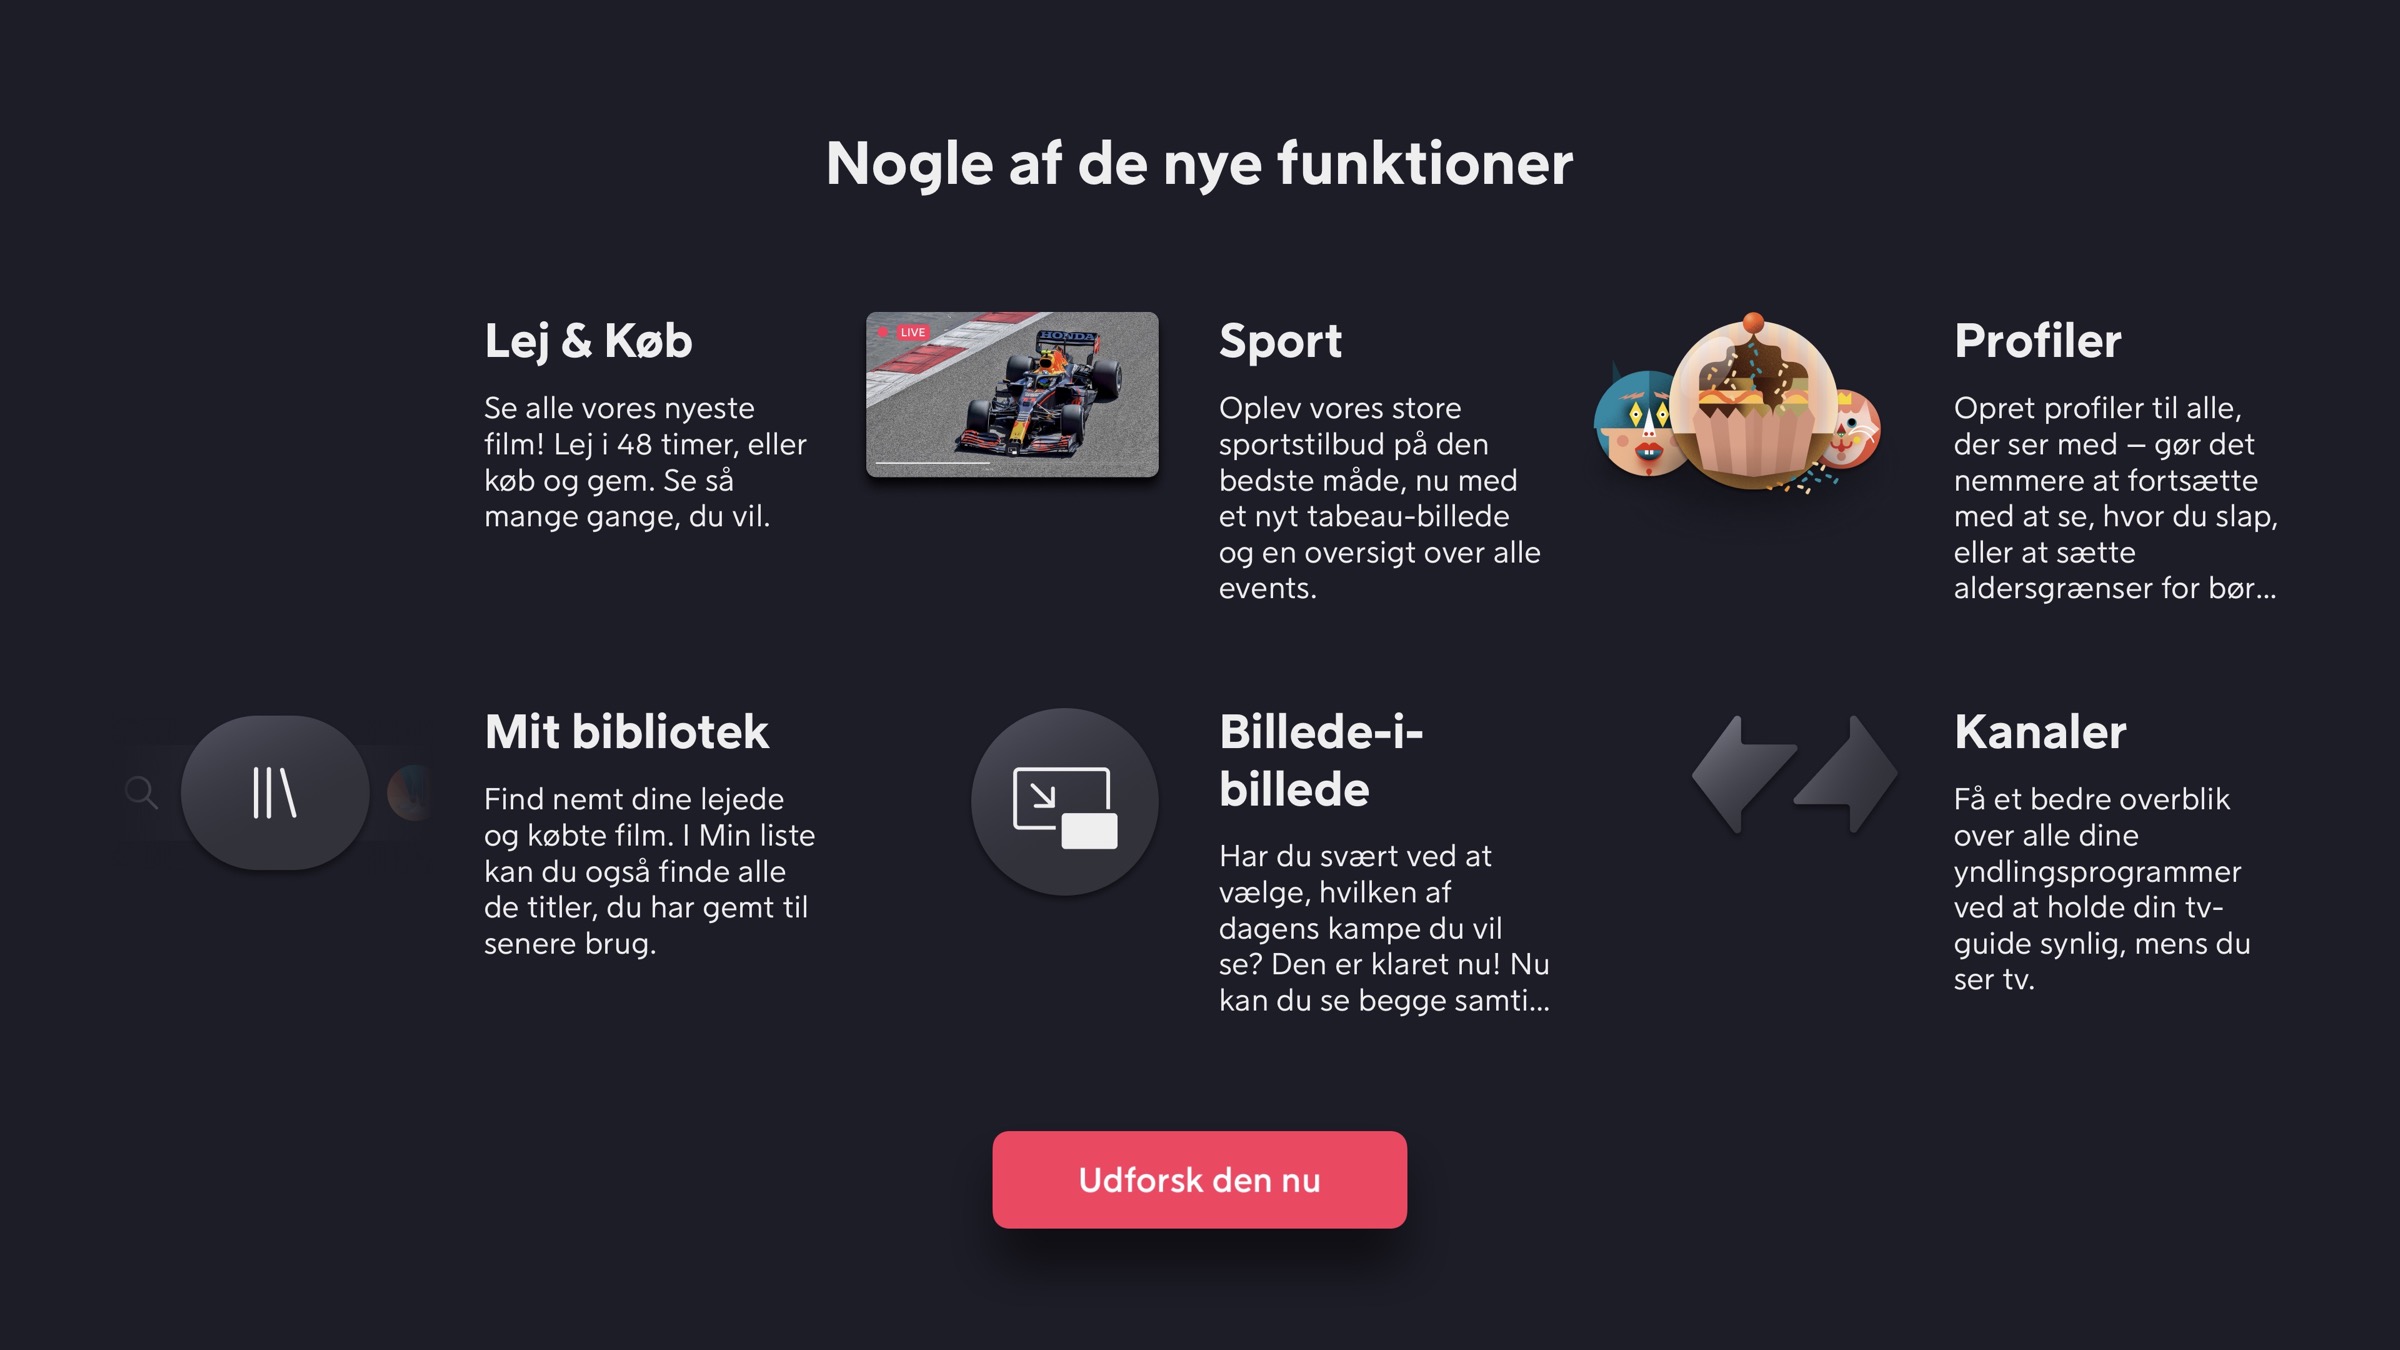 Barn Bonde labyrint Ny, redesignet Viaplay app klar på Apple TV - FlatpanelsDK